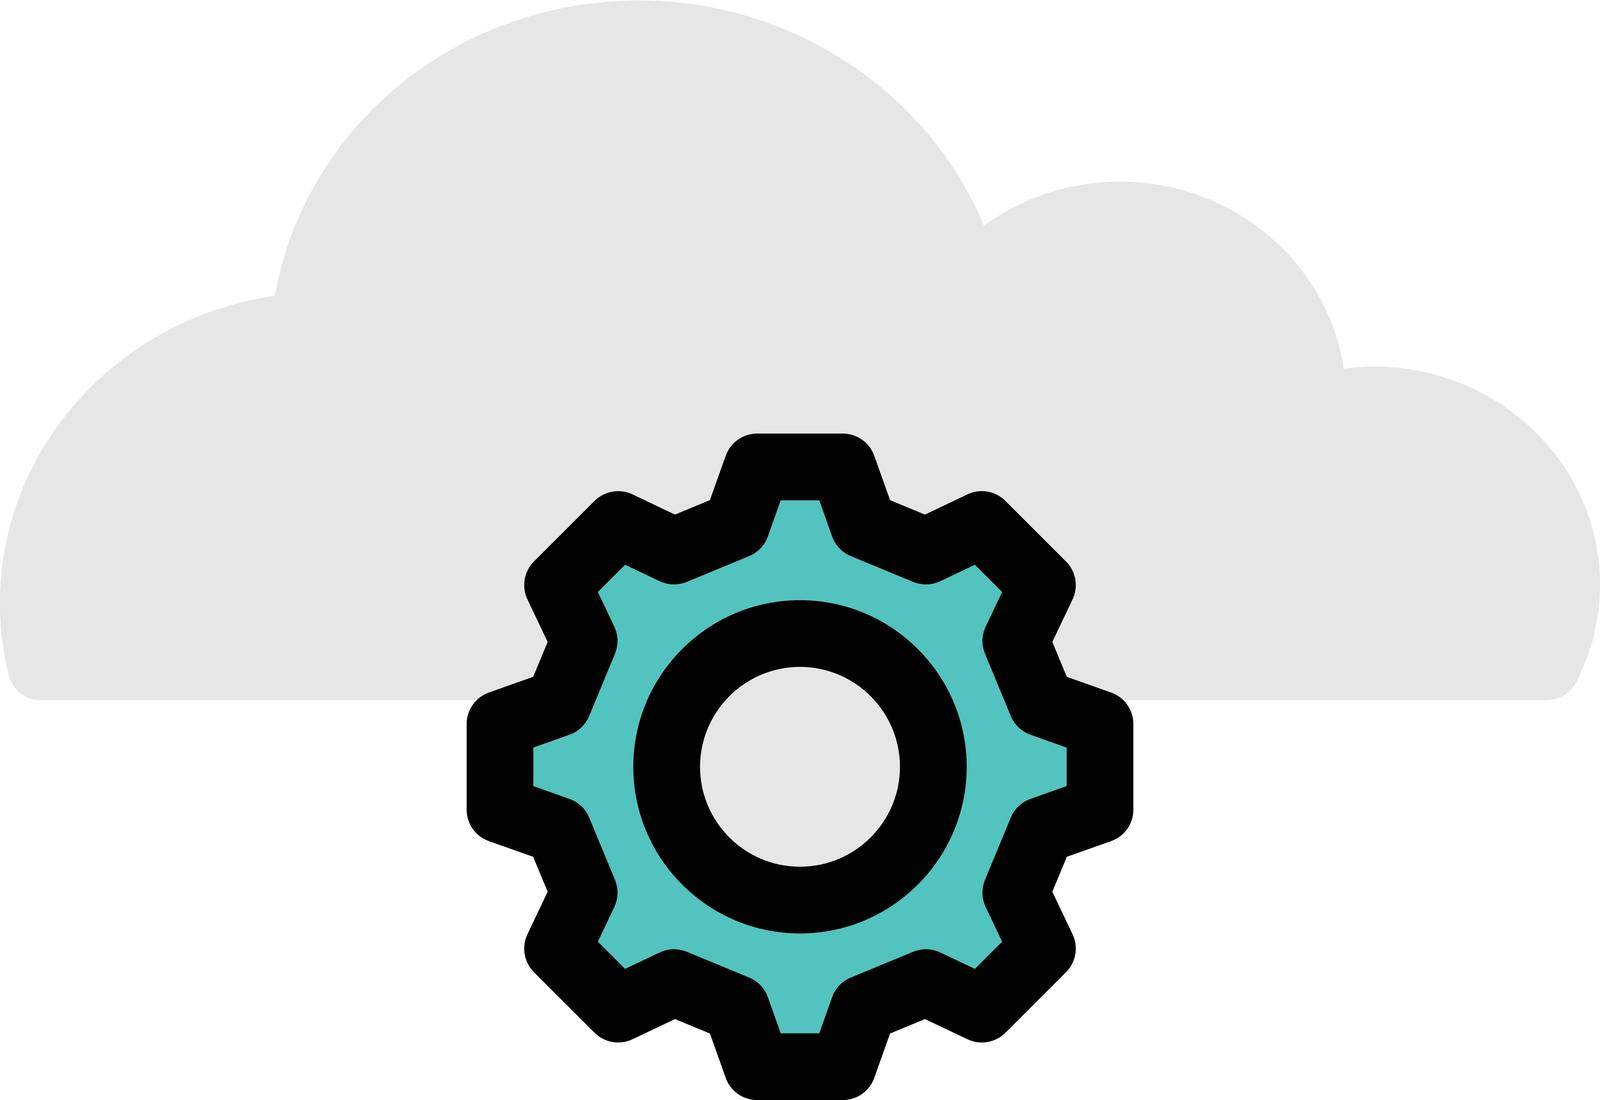 cloud vector colour line icon